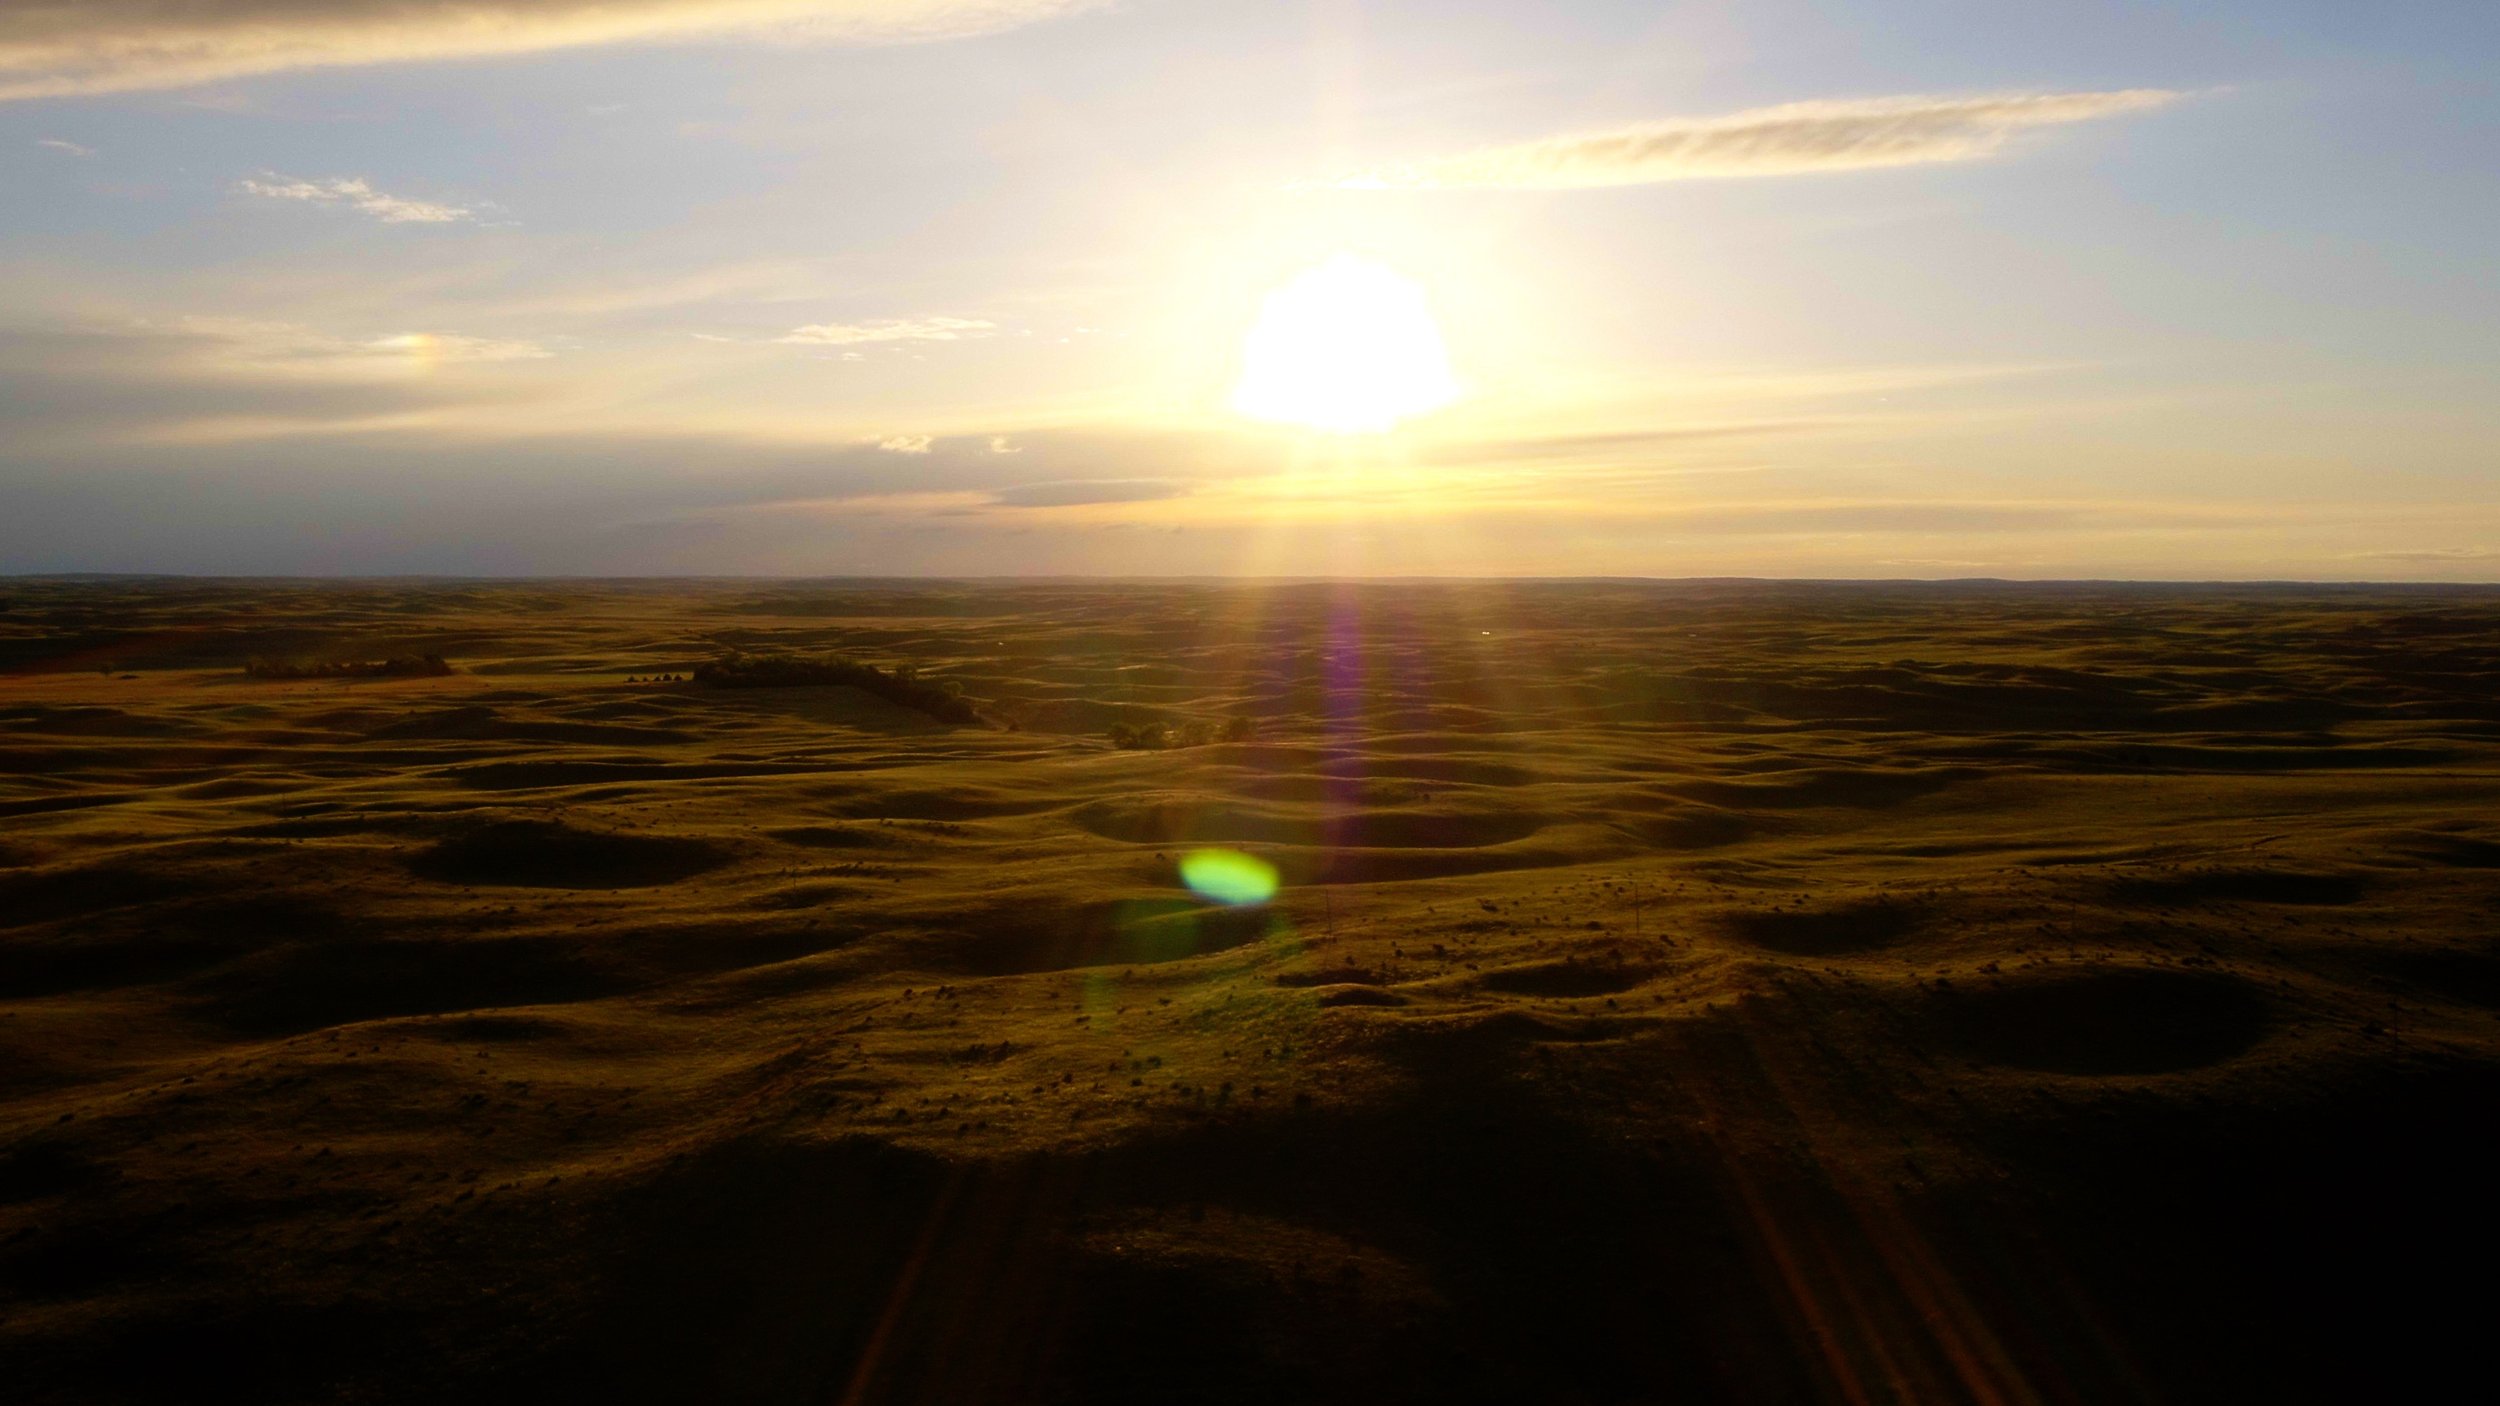  The Sand Hills of Nebraska at sunset.